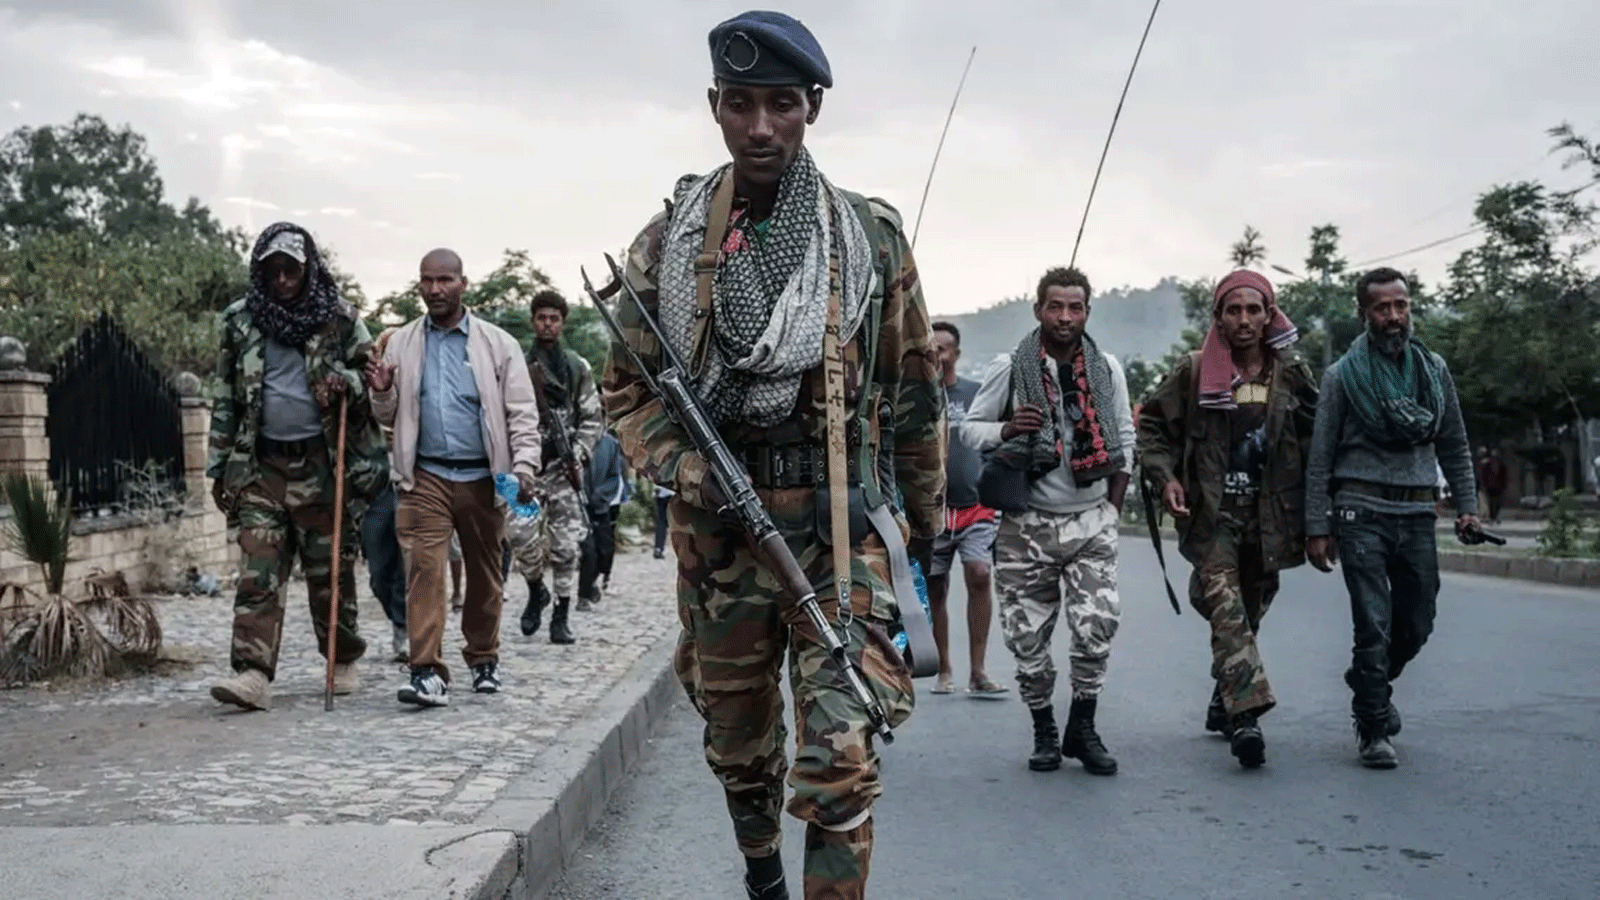 مقاتلو جبهة تحرير تيغراي الشعبية يصلون بعد ثماني ساعات من المشي في ميكيلي، عاصمة منطقة تيغراي، إثيوبيا، في 29 حزيران\ يونيو 2021